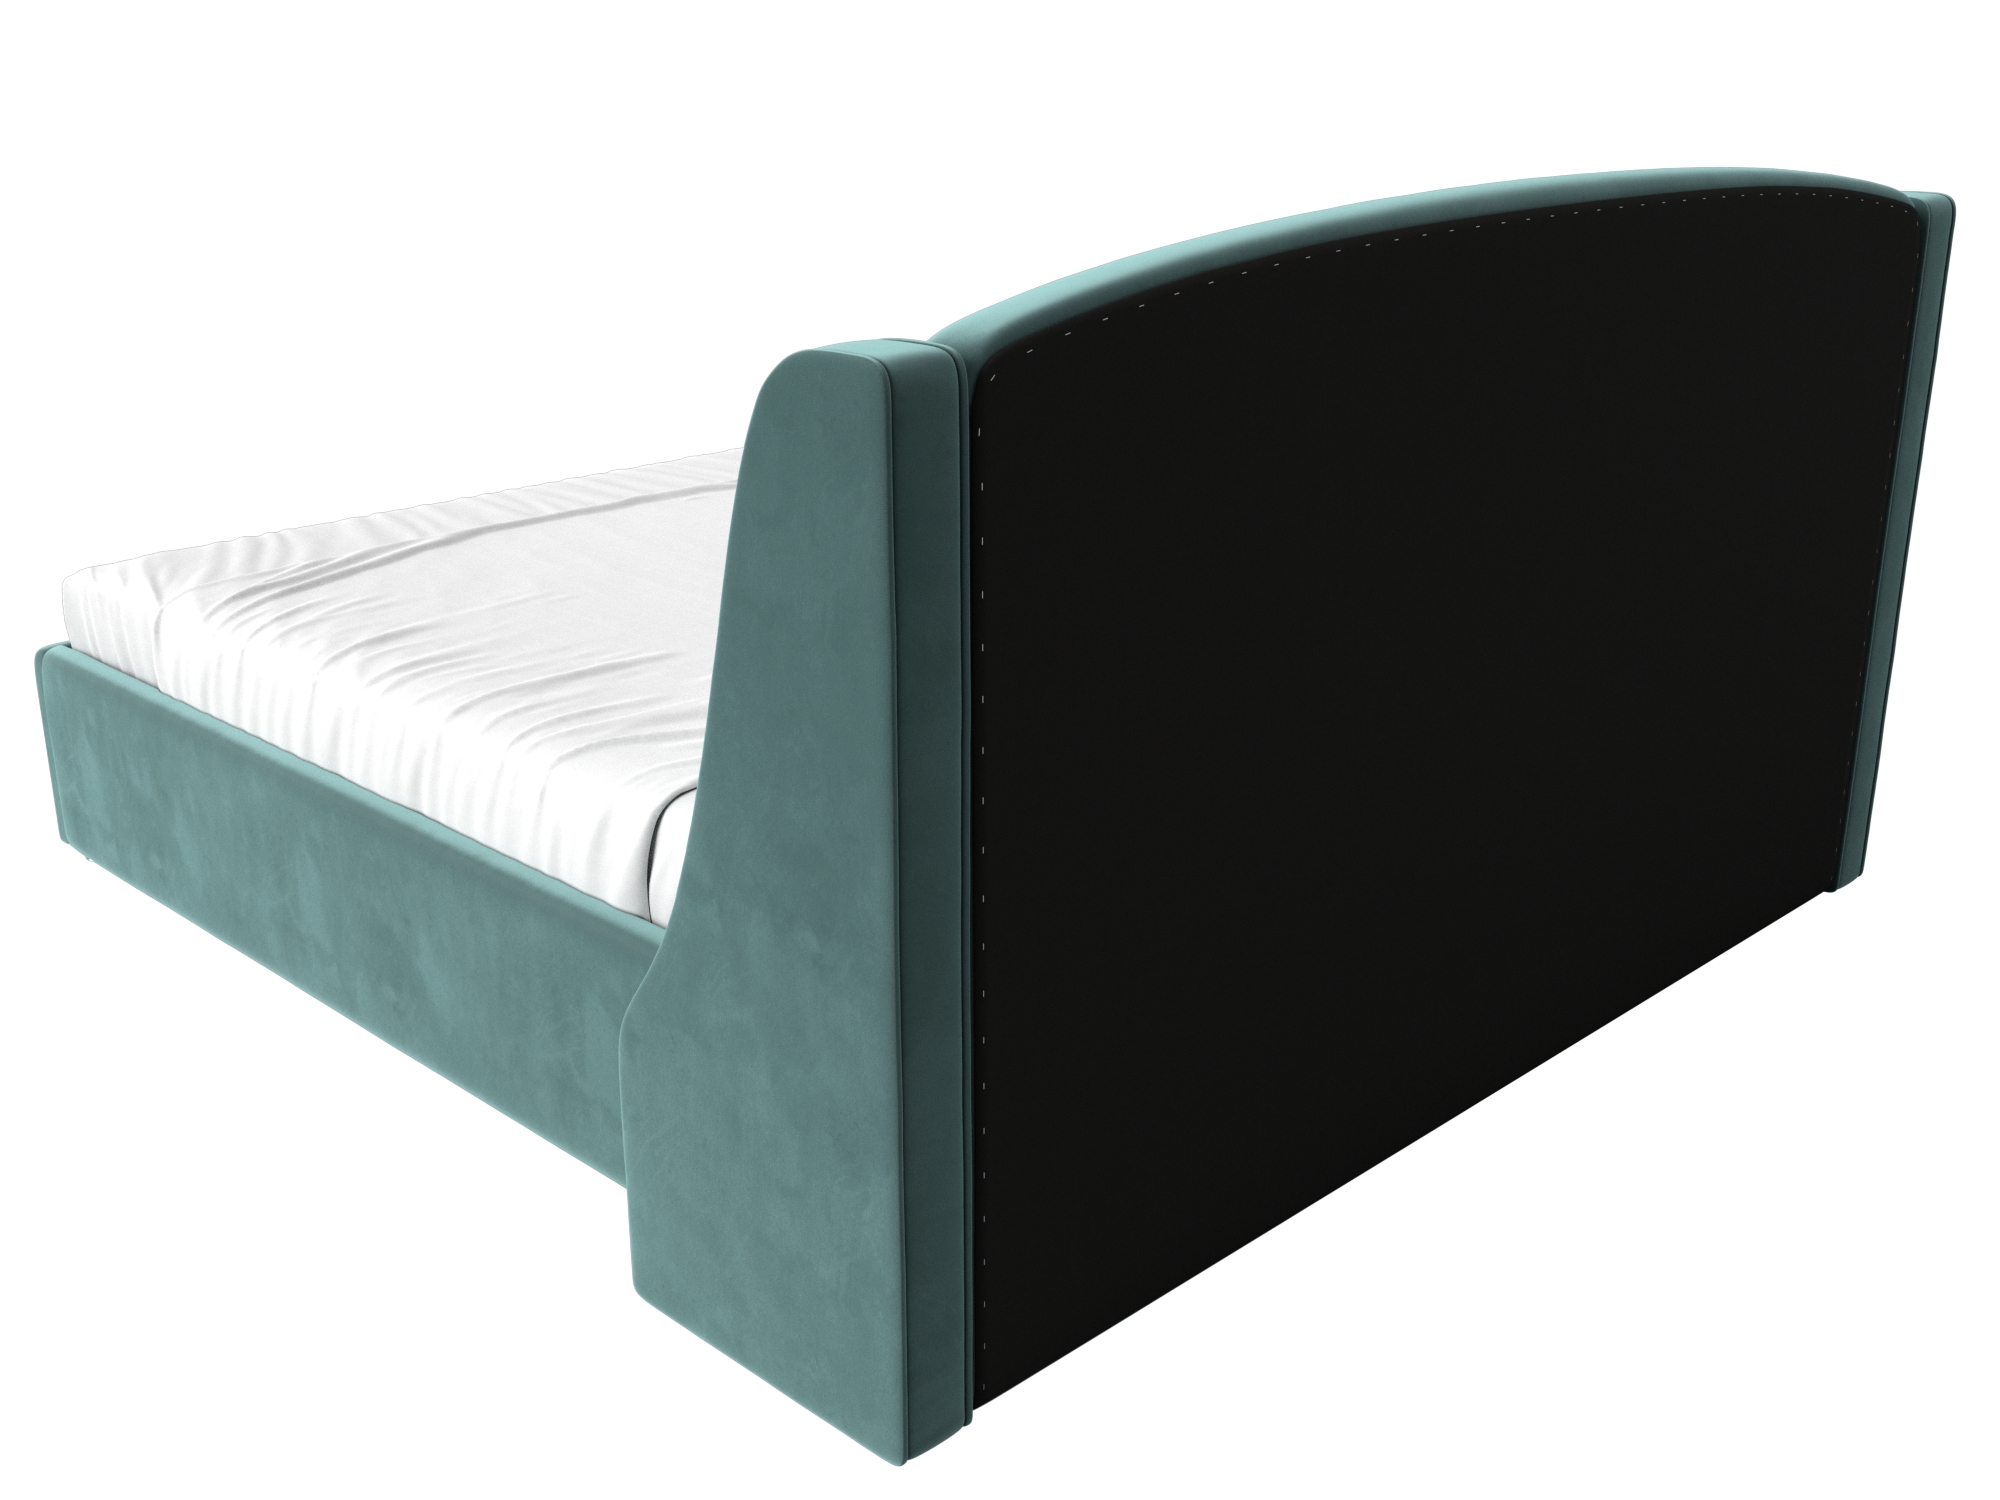 Интерьерная кровать Лотос 160 (бирюзовый)